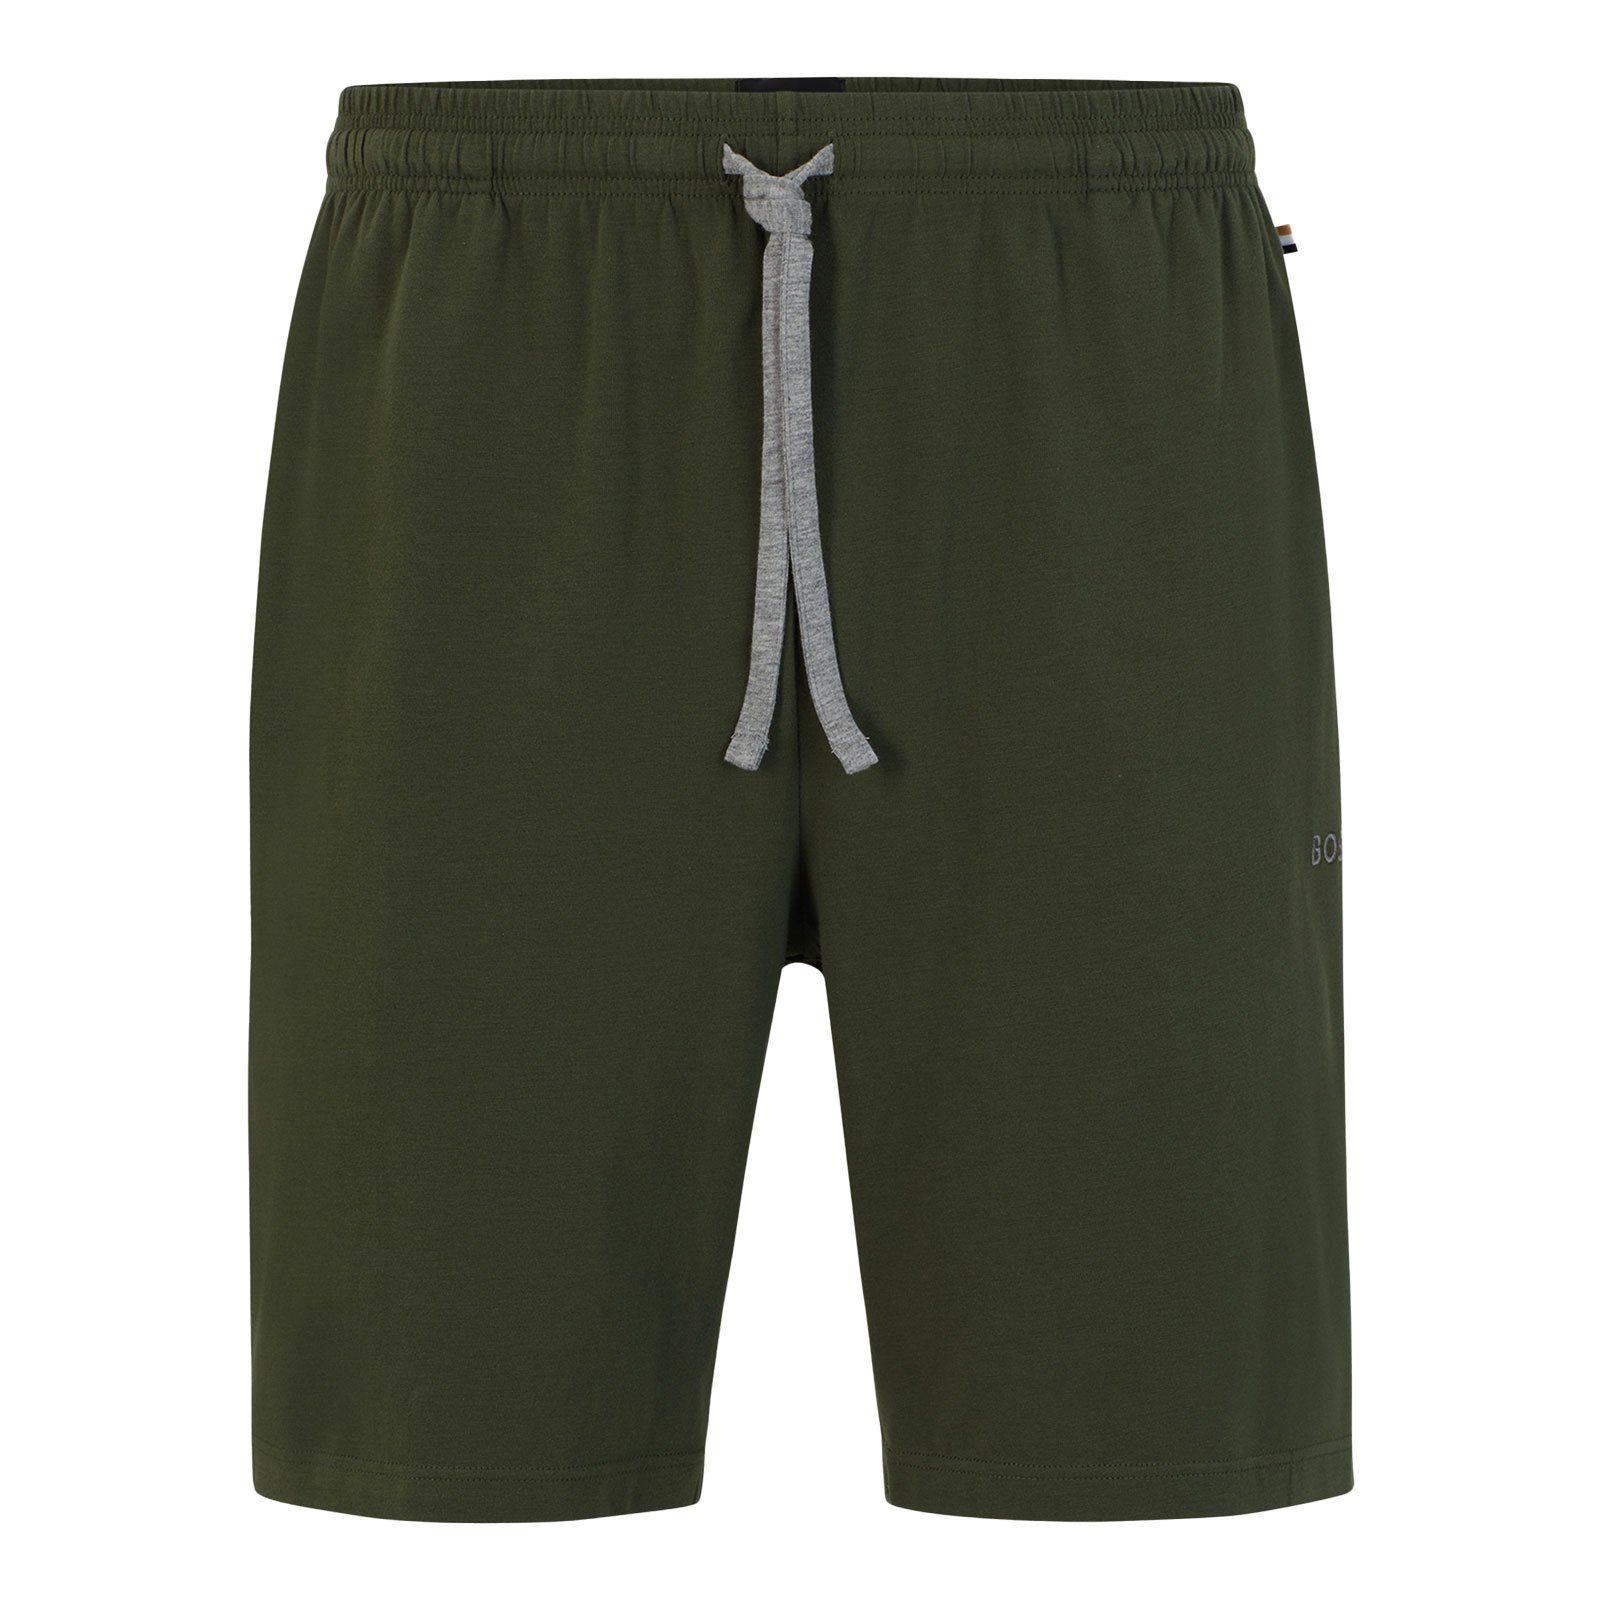 BOSS Shorts Mix&Match Short CW 306 gesticktem green Markenlogo mit dark